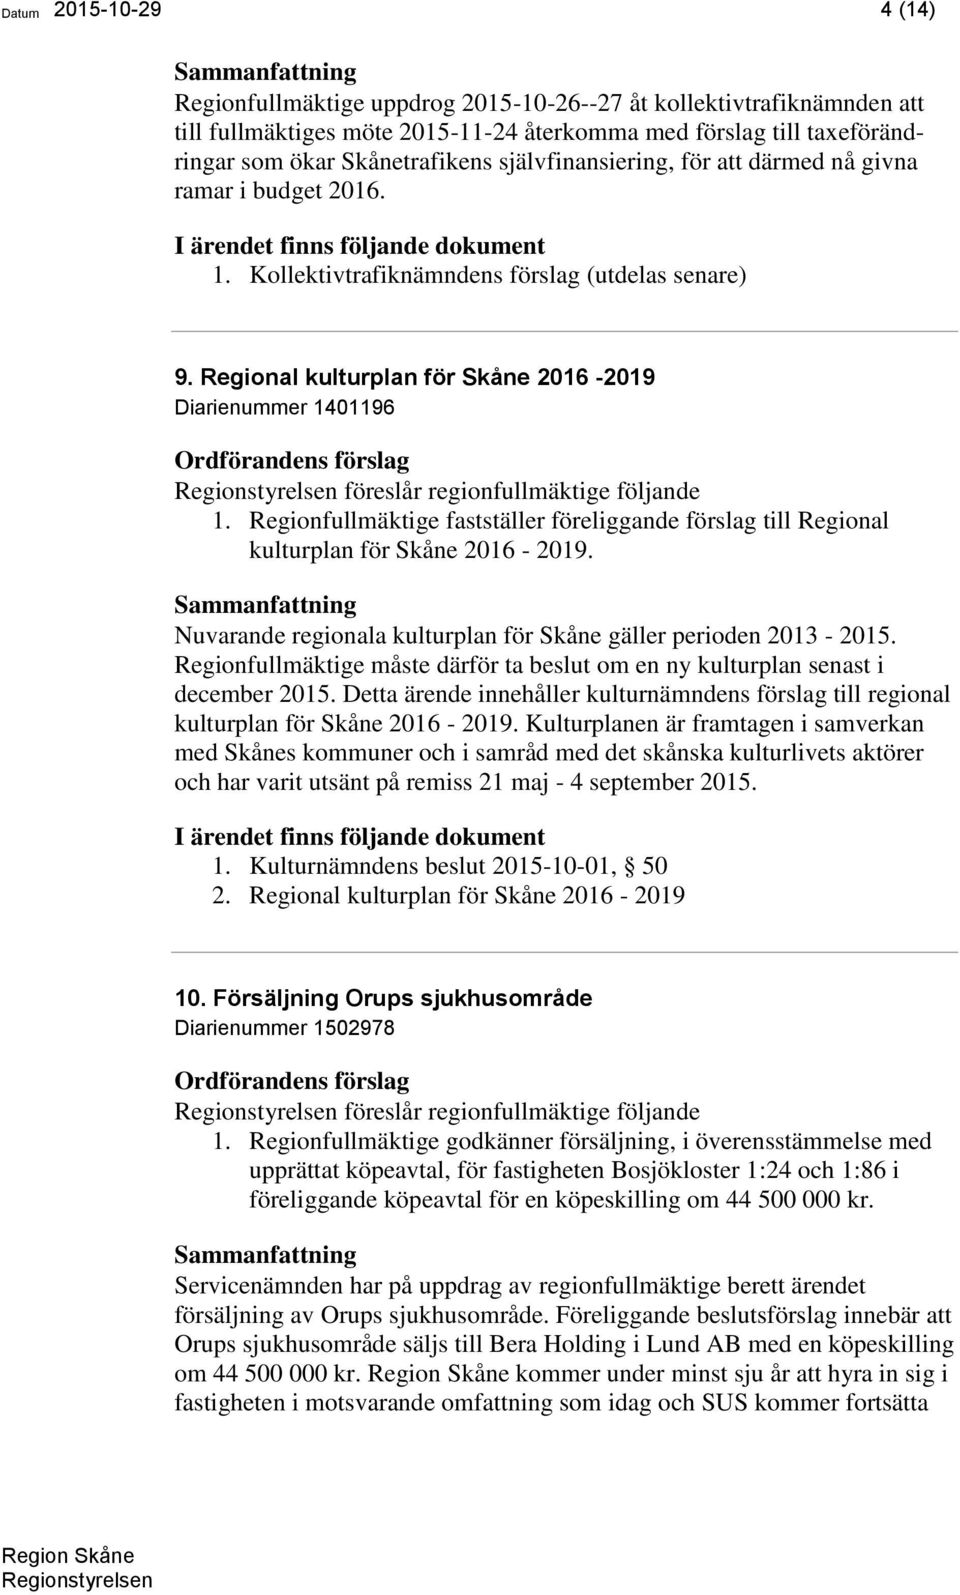 Regional kulturplan för Skåne 2016-2019 Diarienummer 1401196 föreslår regionfullmäktige följande 1. Regionfullmäktige fastställer föreliggande förslag till Regional kulturplan för Skåne 2016-2019.